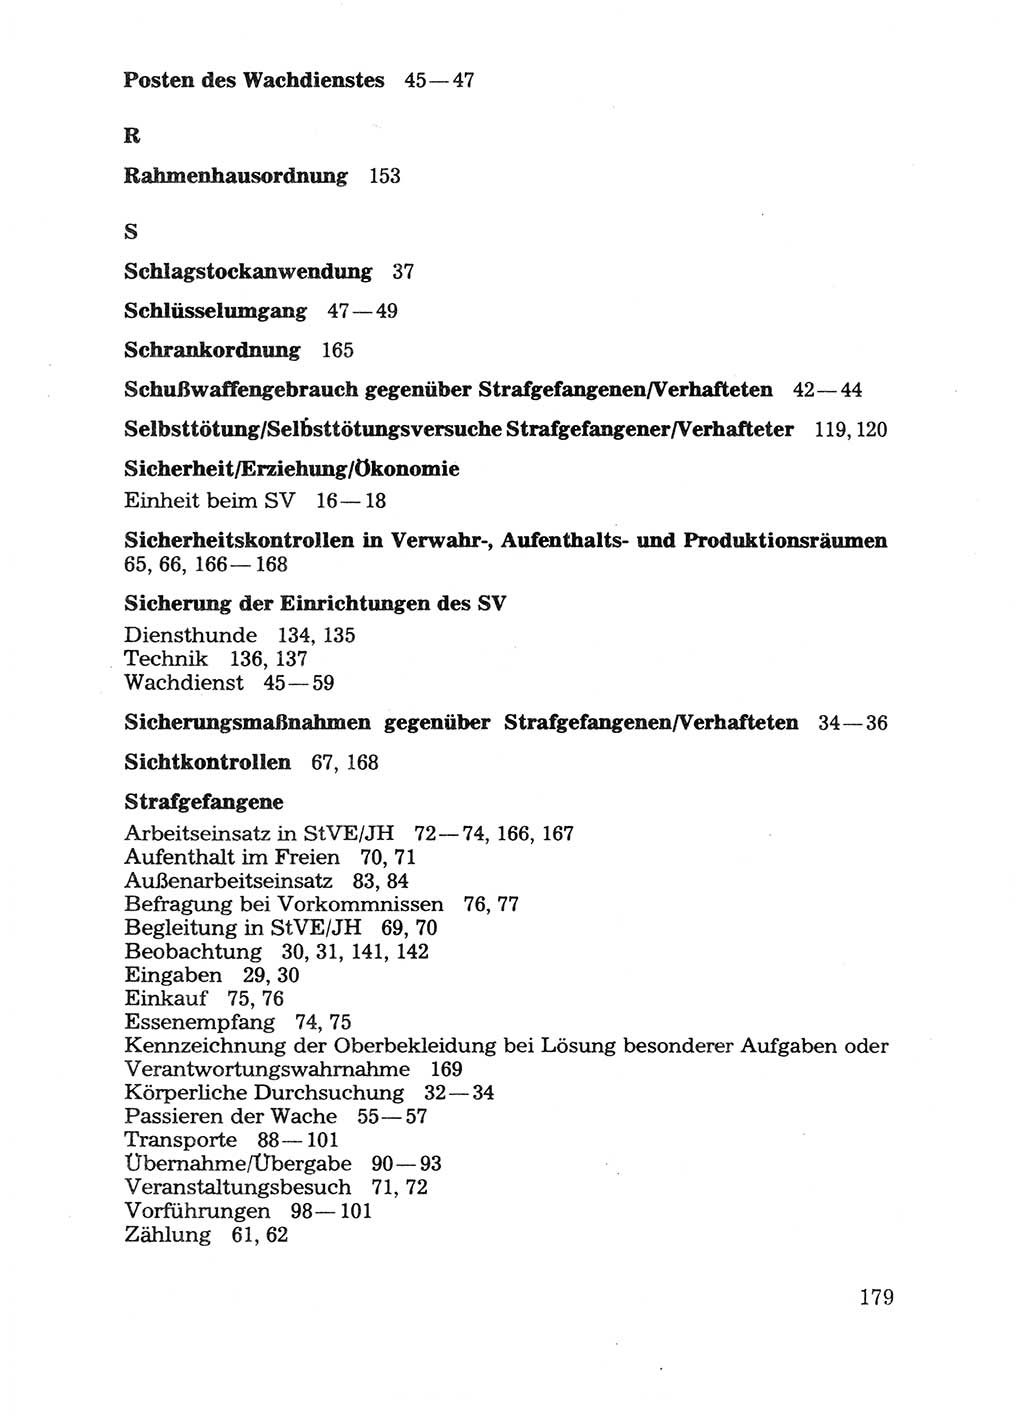 Handbuch für operative Dienste, Abteilung Strafvollzug (SV) [Ministerium des Innern (MdI) Deutsche Demokratische Republik (DDR)] 1981, Seite 179 (Hb. op. D. Abt. SV MdI DDR 1981, S. 179)